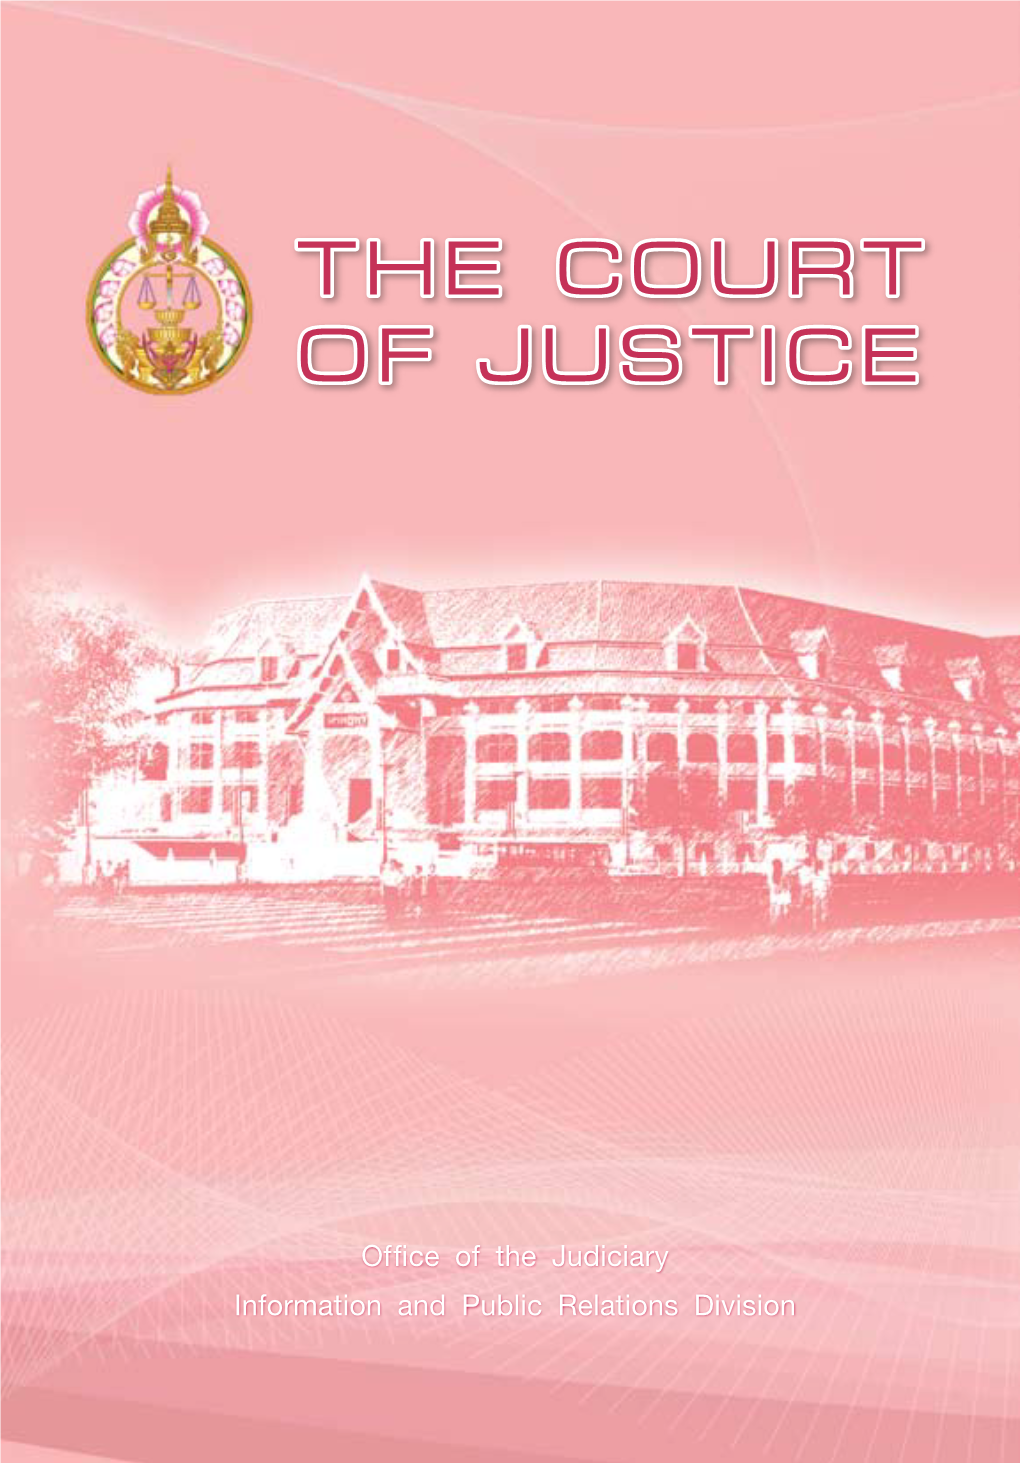 The Court of Justice the Court of Justice